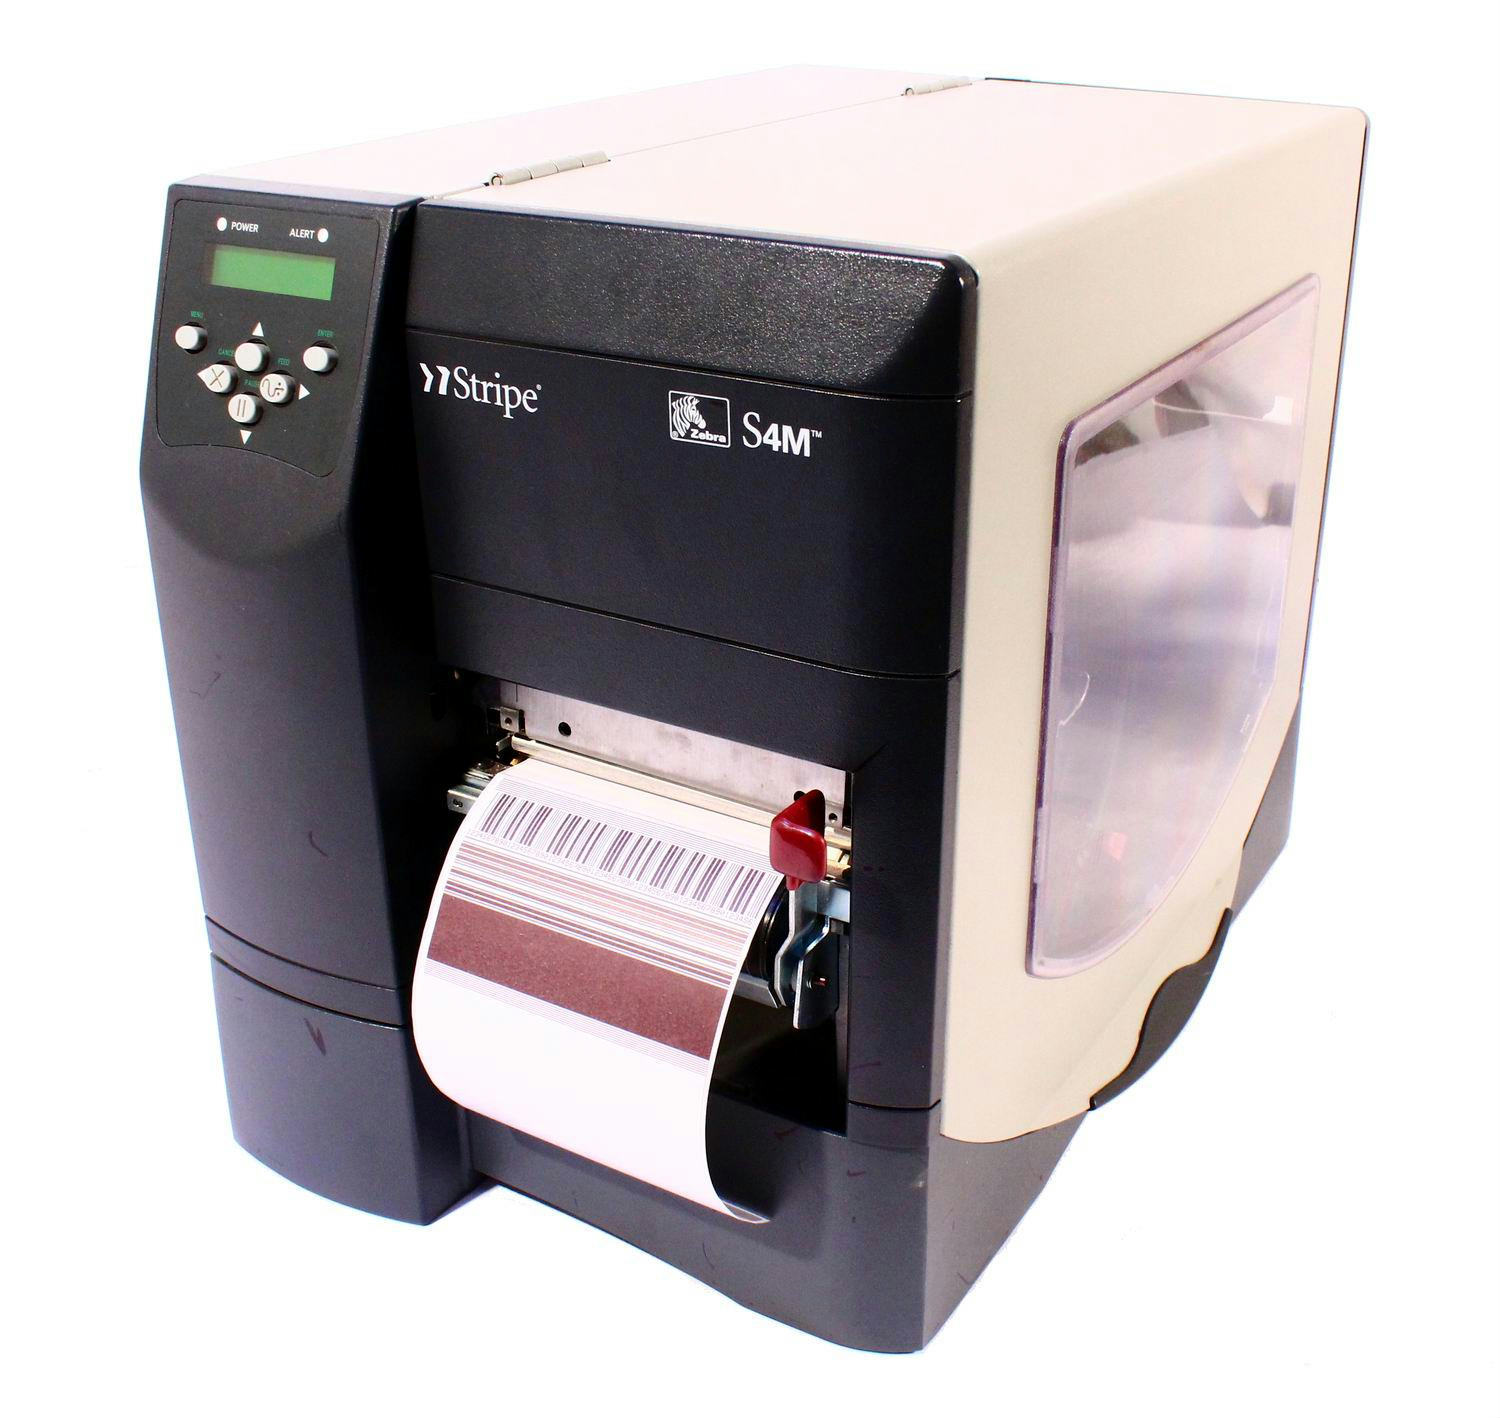 Zebra S4m Industrial Thermal Transfer Label Printer Ethernet S4m00 2001 0200t Printers 6541